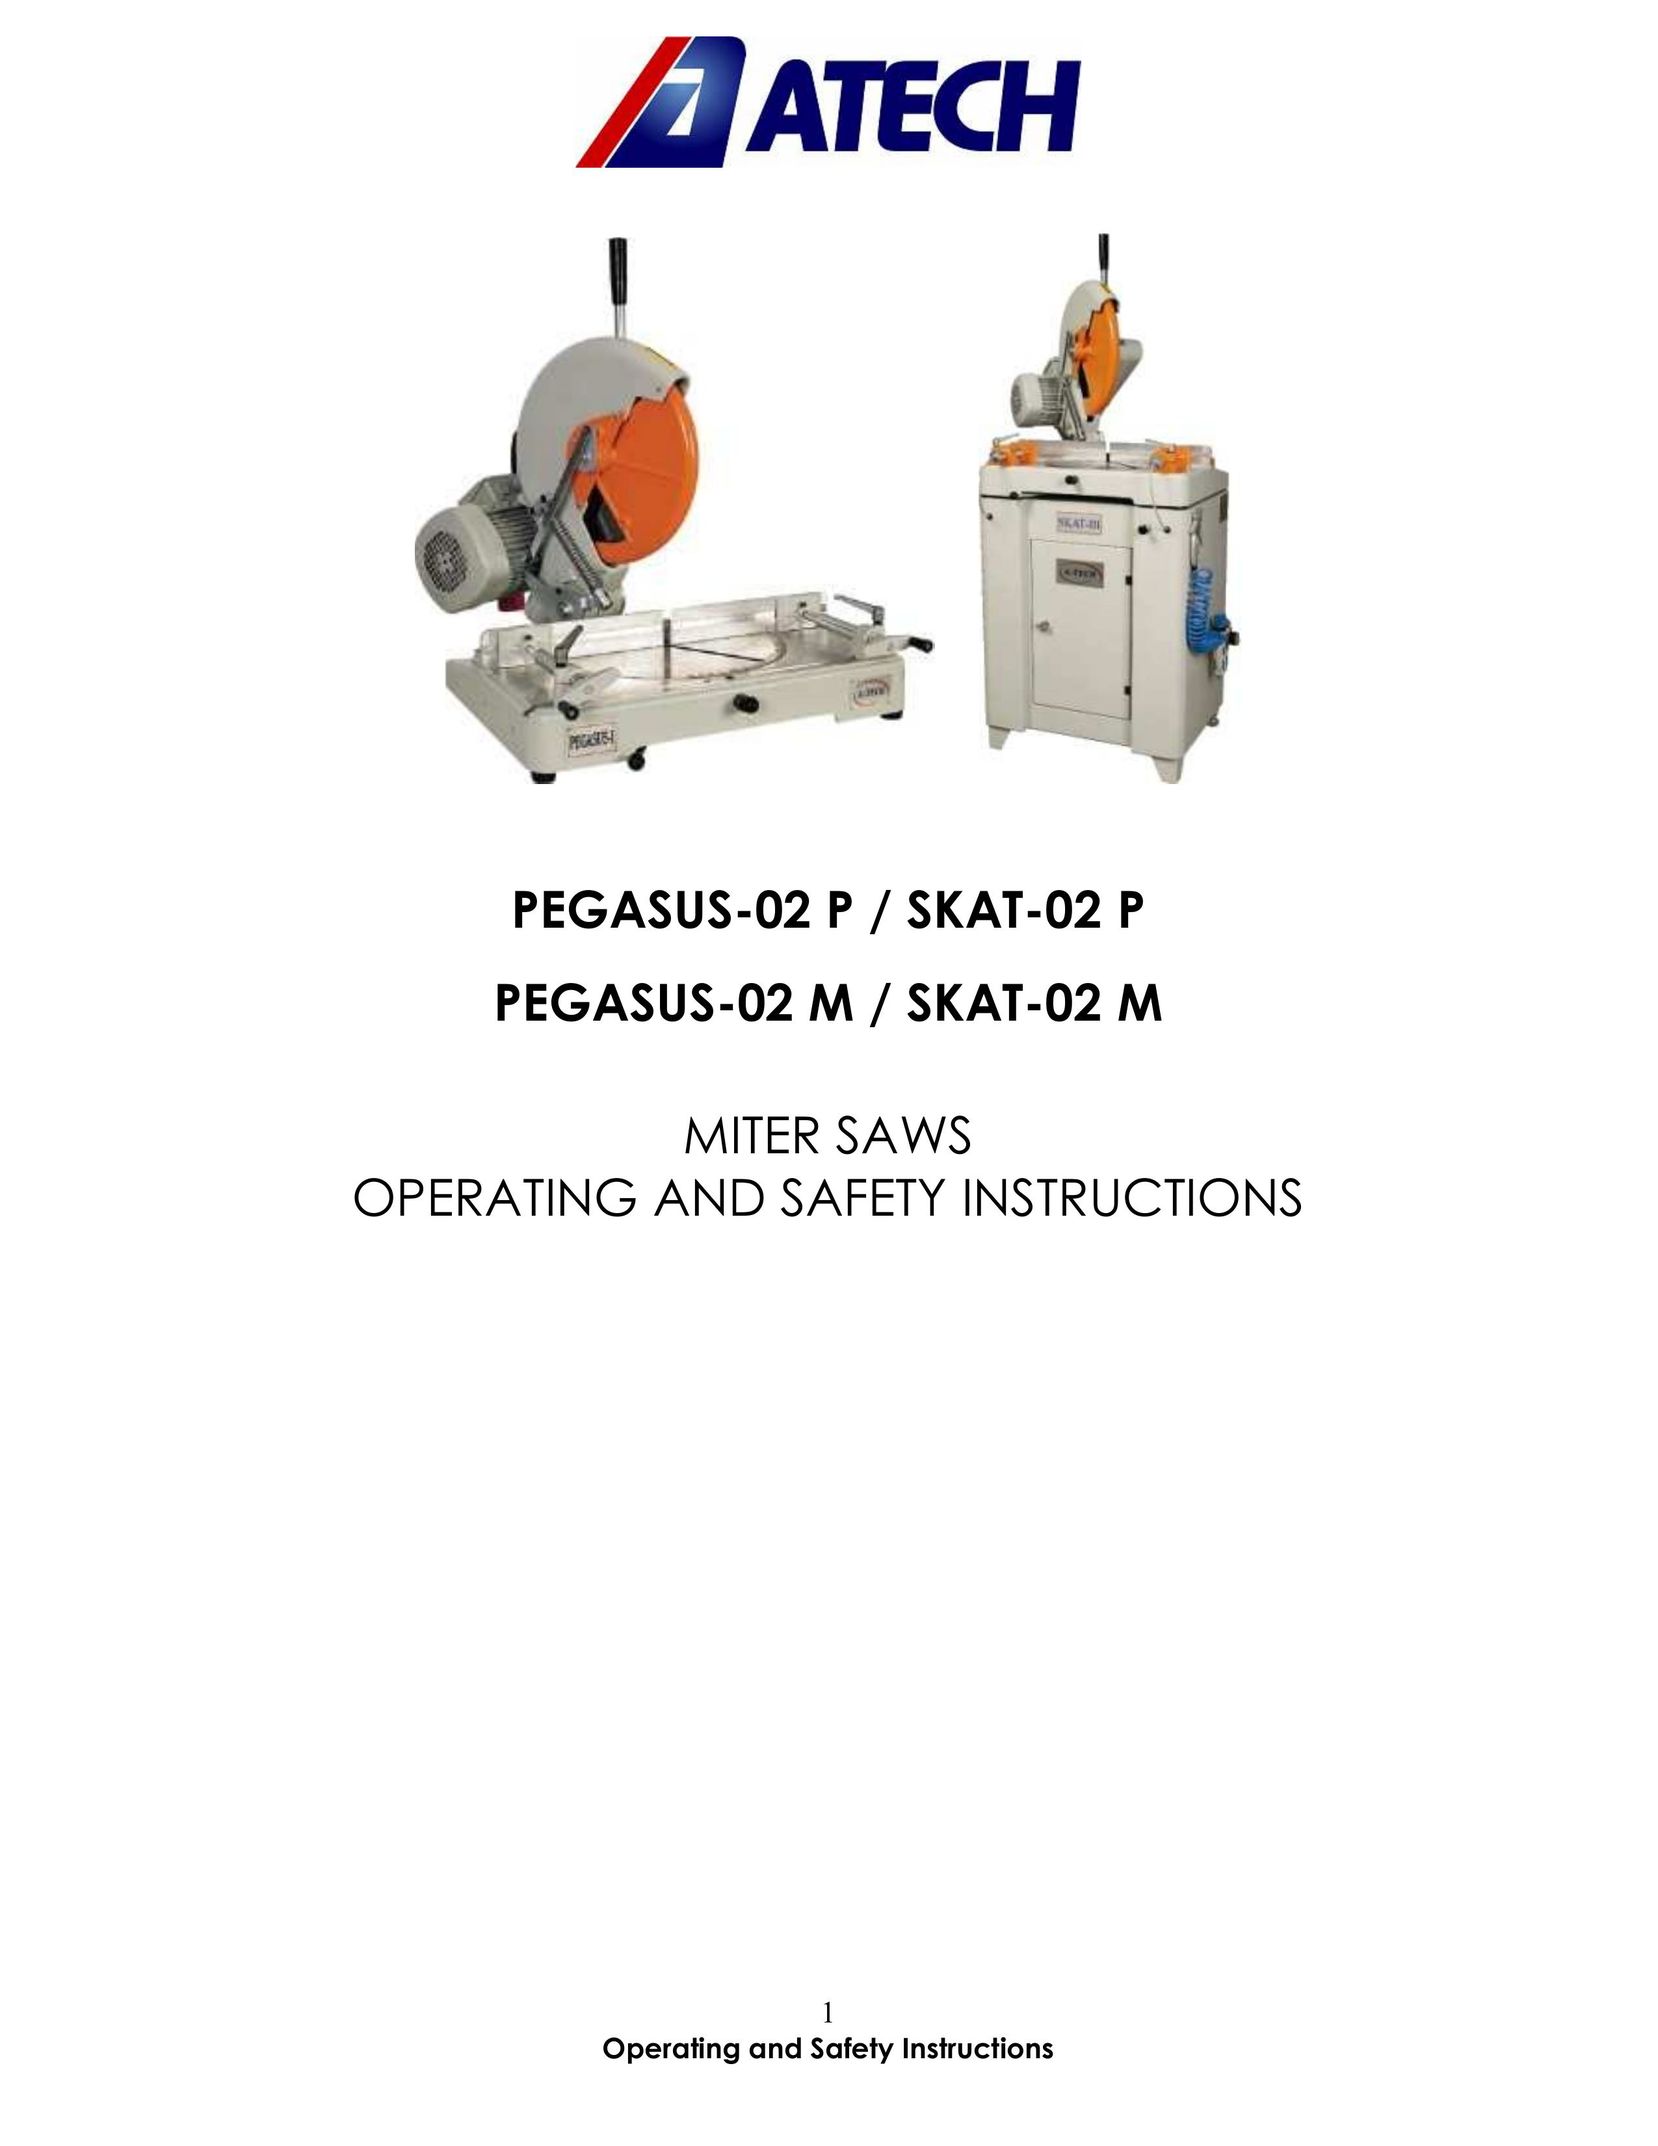 Atech Tech PEGASUS-02 P Saw User Manual